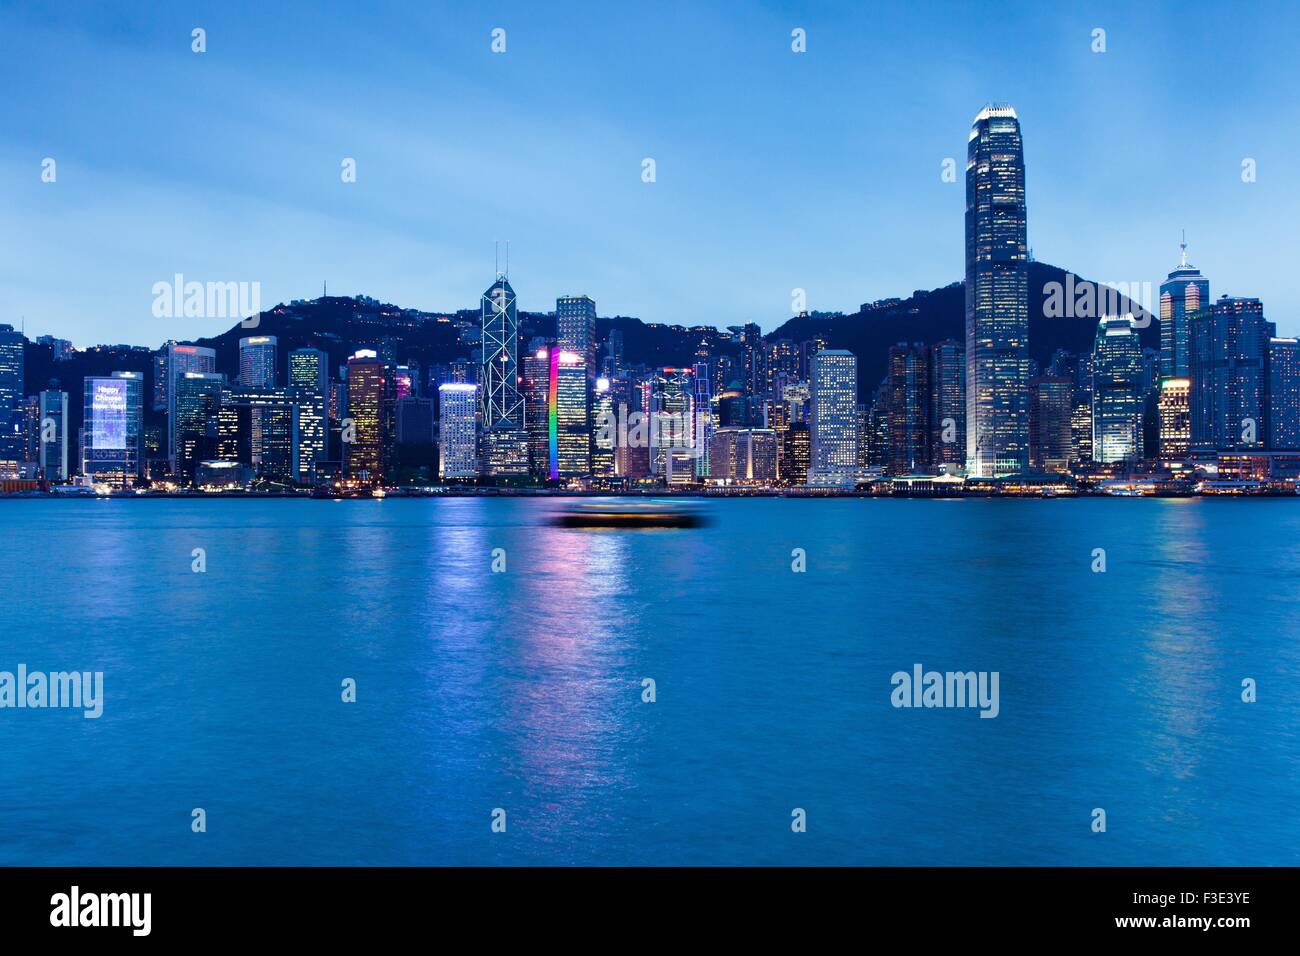 HONG KONG - FEB 19, 2014: Night view of Hong Kong at February 19, 2014. Stock Photo